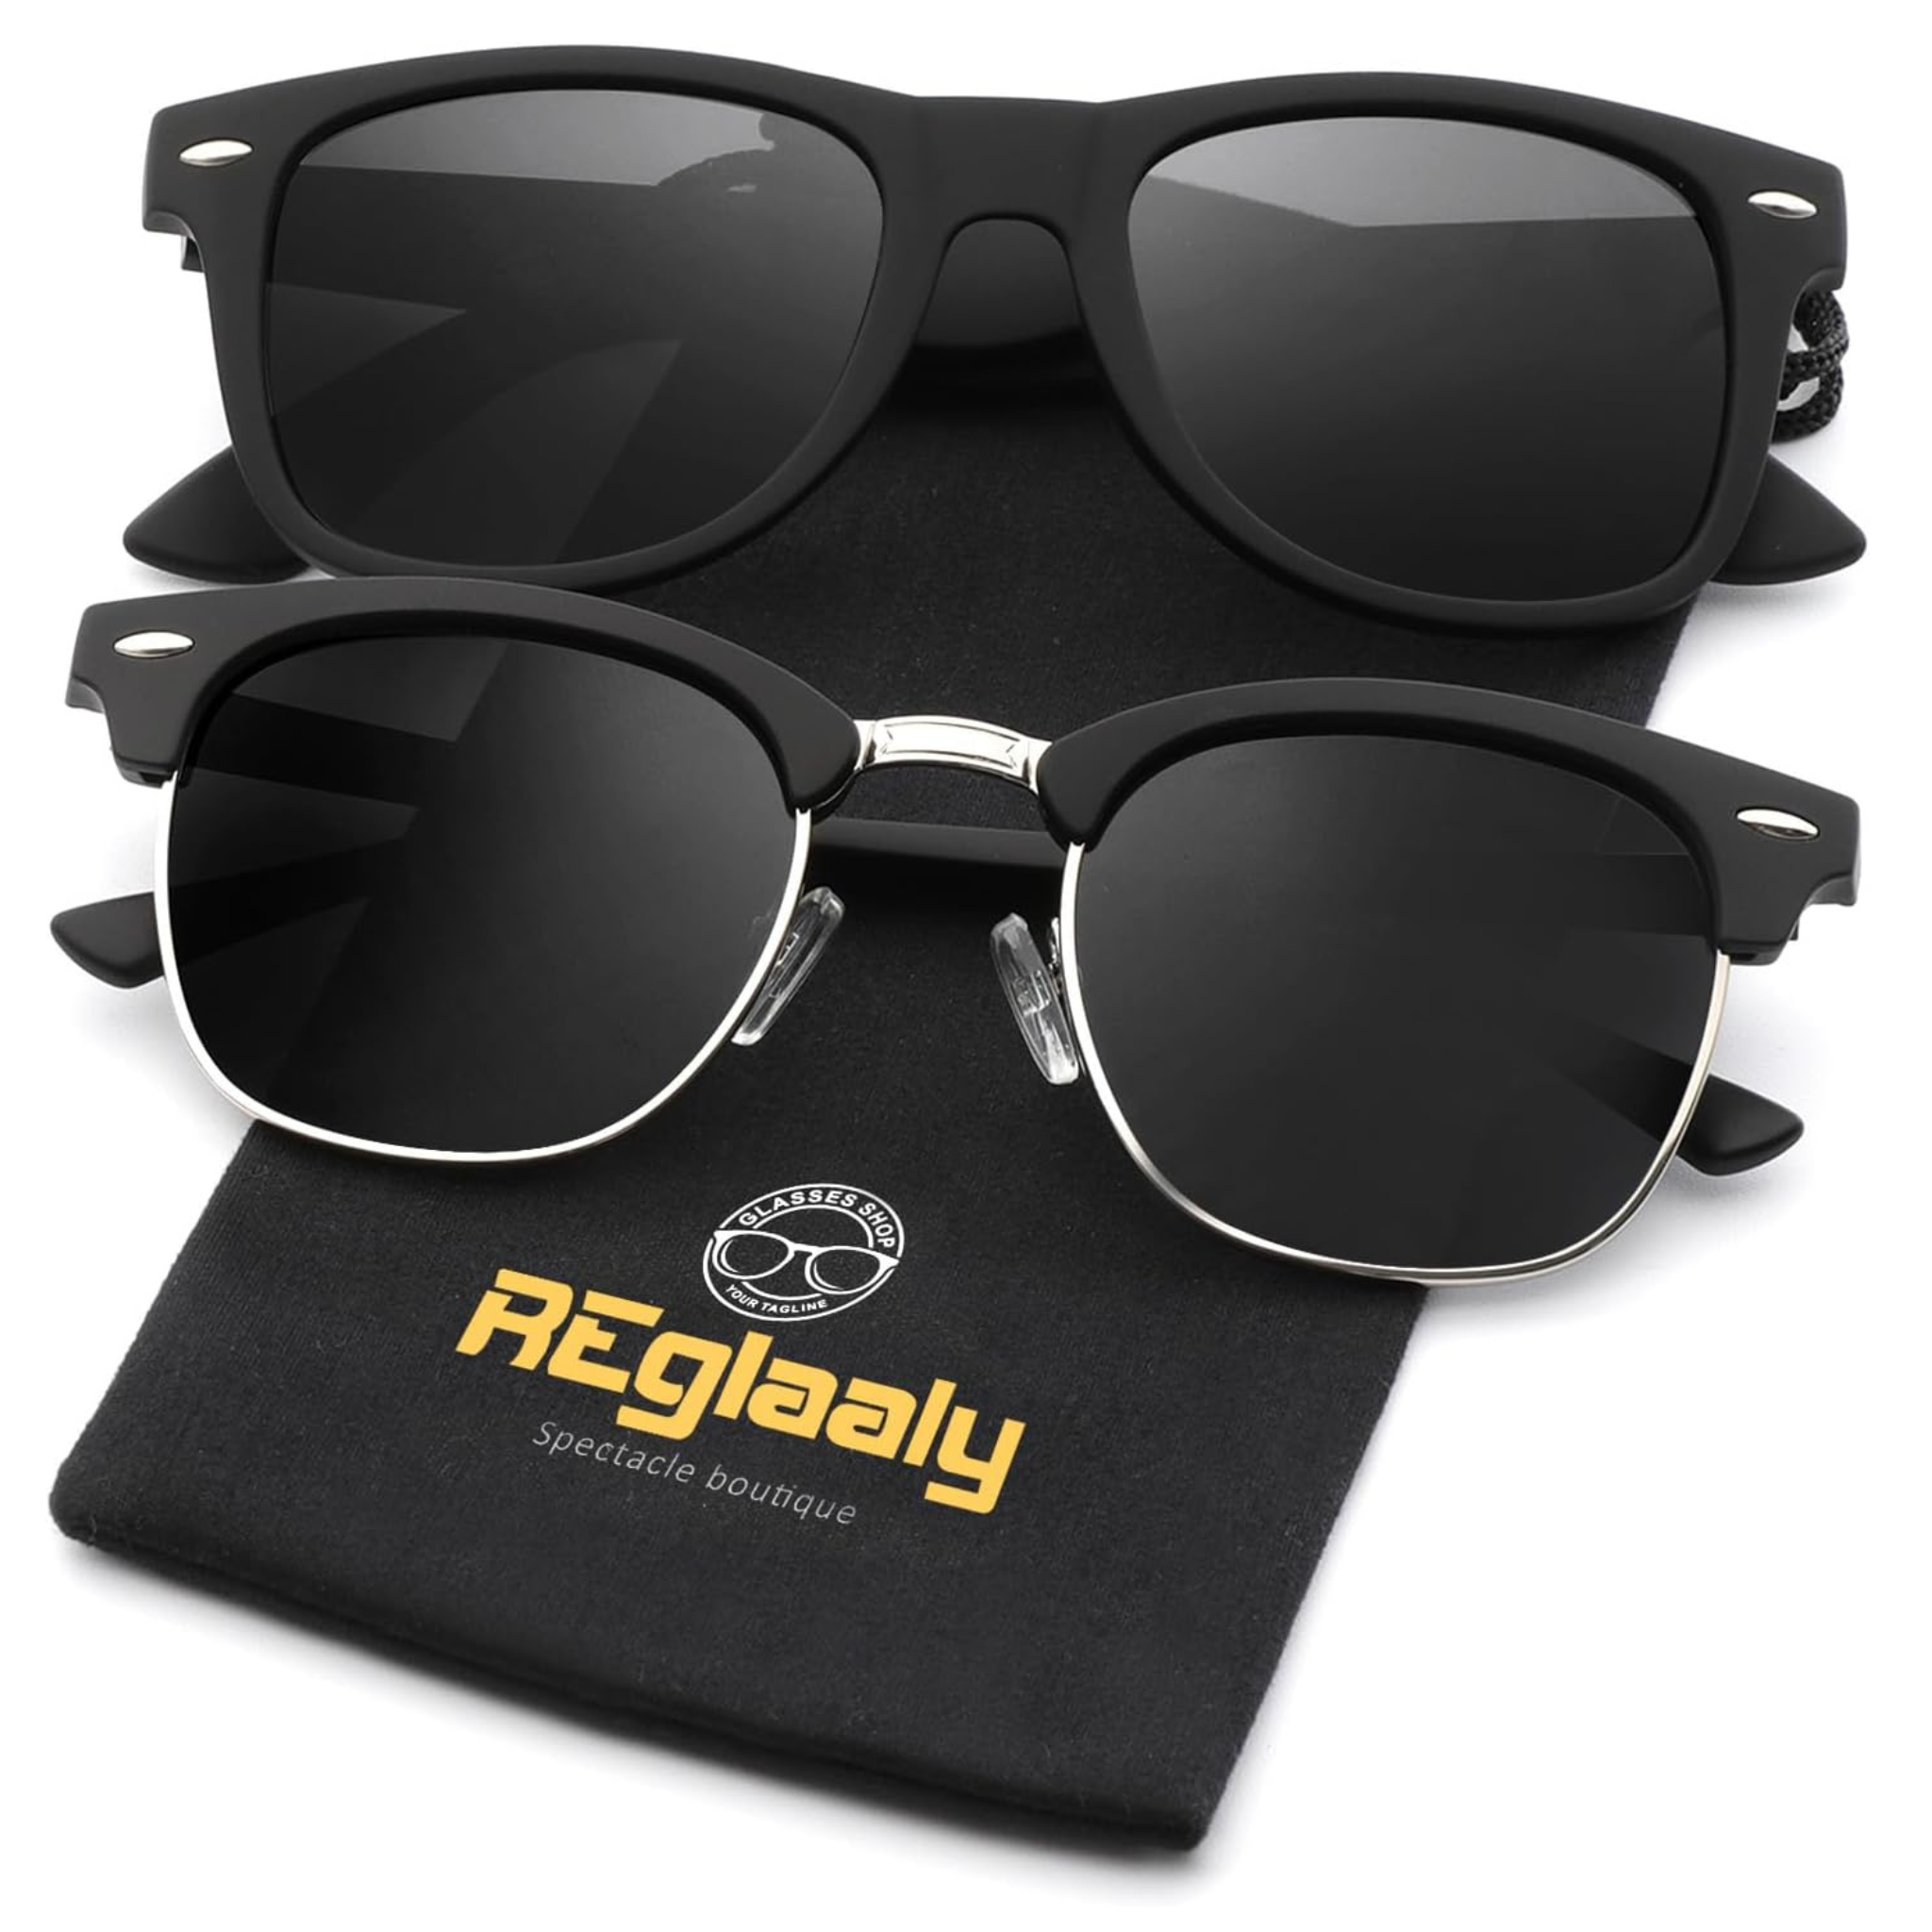 2-Pairs Reglaaly Unisex Polarized Sunglasses with UV Blocking Frame